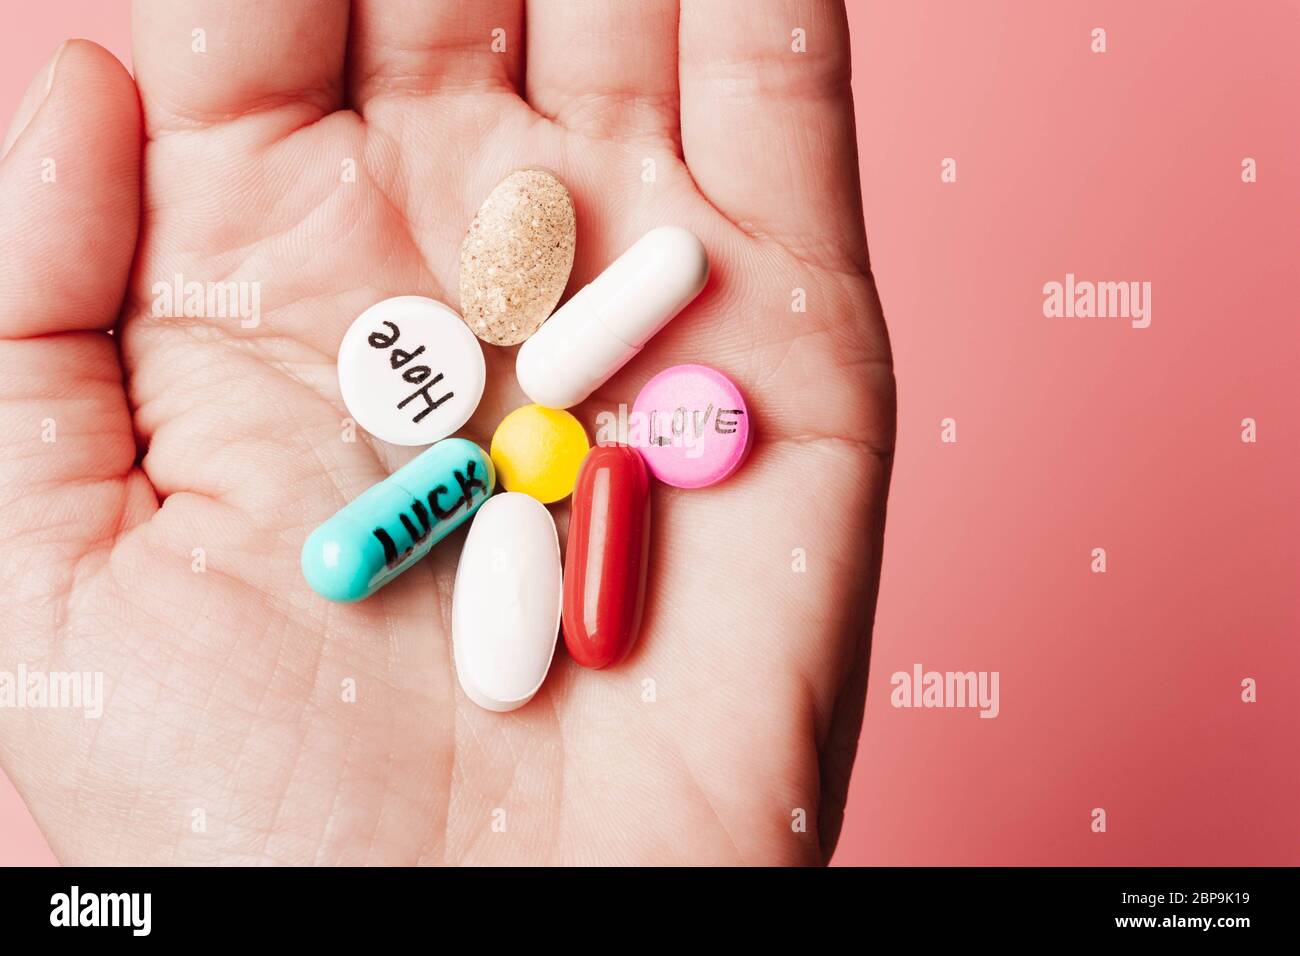 Le concept de pilules créatives, un placebo dans la main, avec joie, amour, bonheur, vérité, pouvoir, rêve sur fond rose Banque D'Images